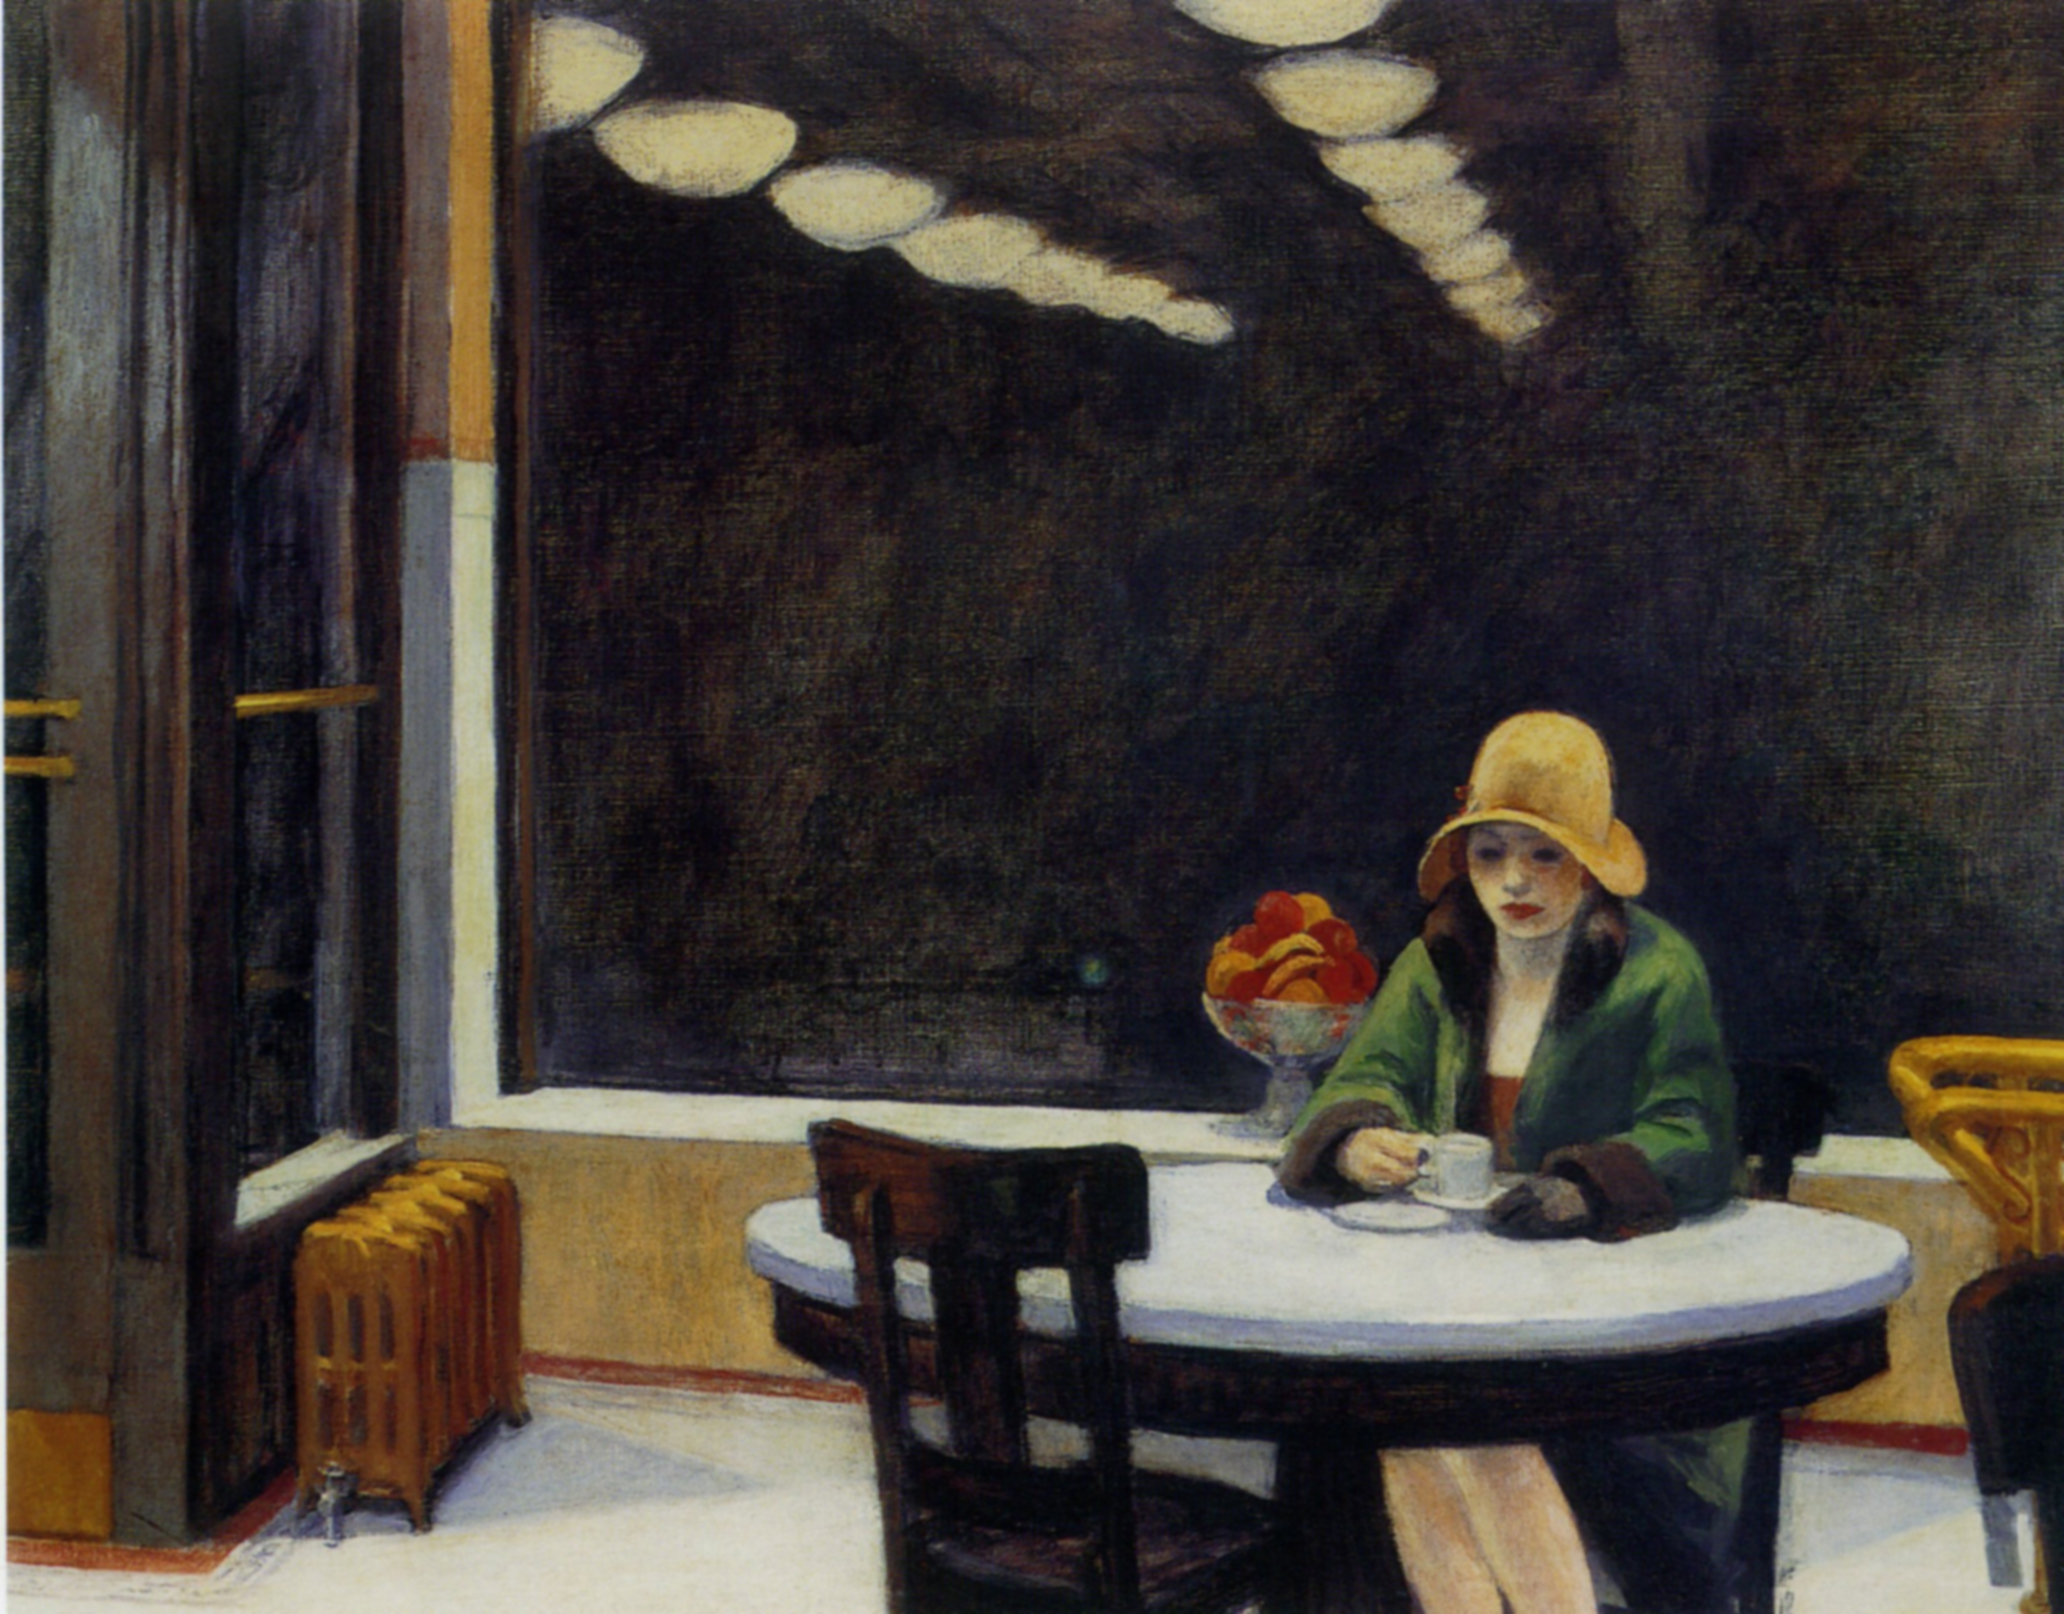 Automat by Edward Hopper - 1927 - 71.4 cm × 91.4 cm Des Moines Art Center